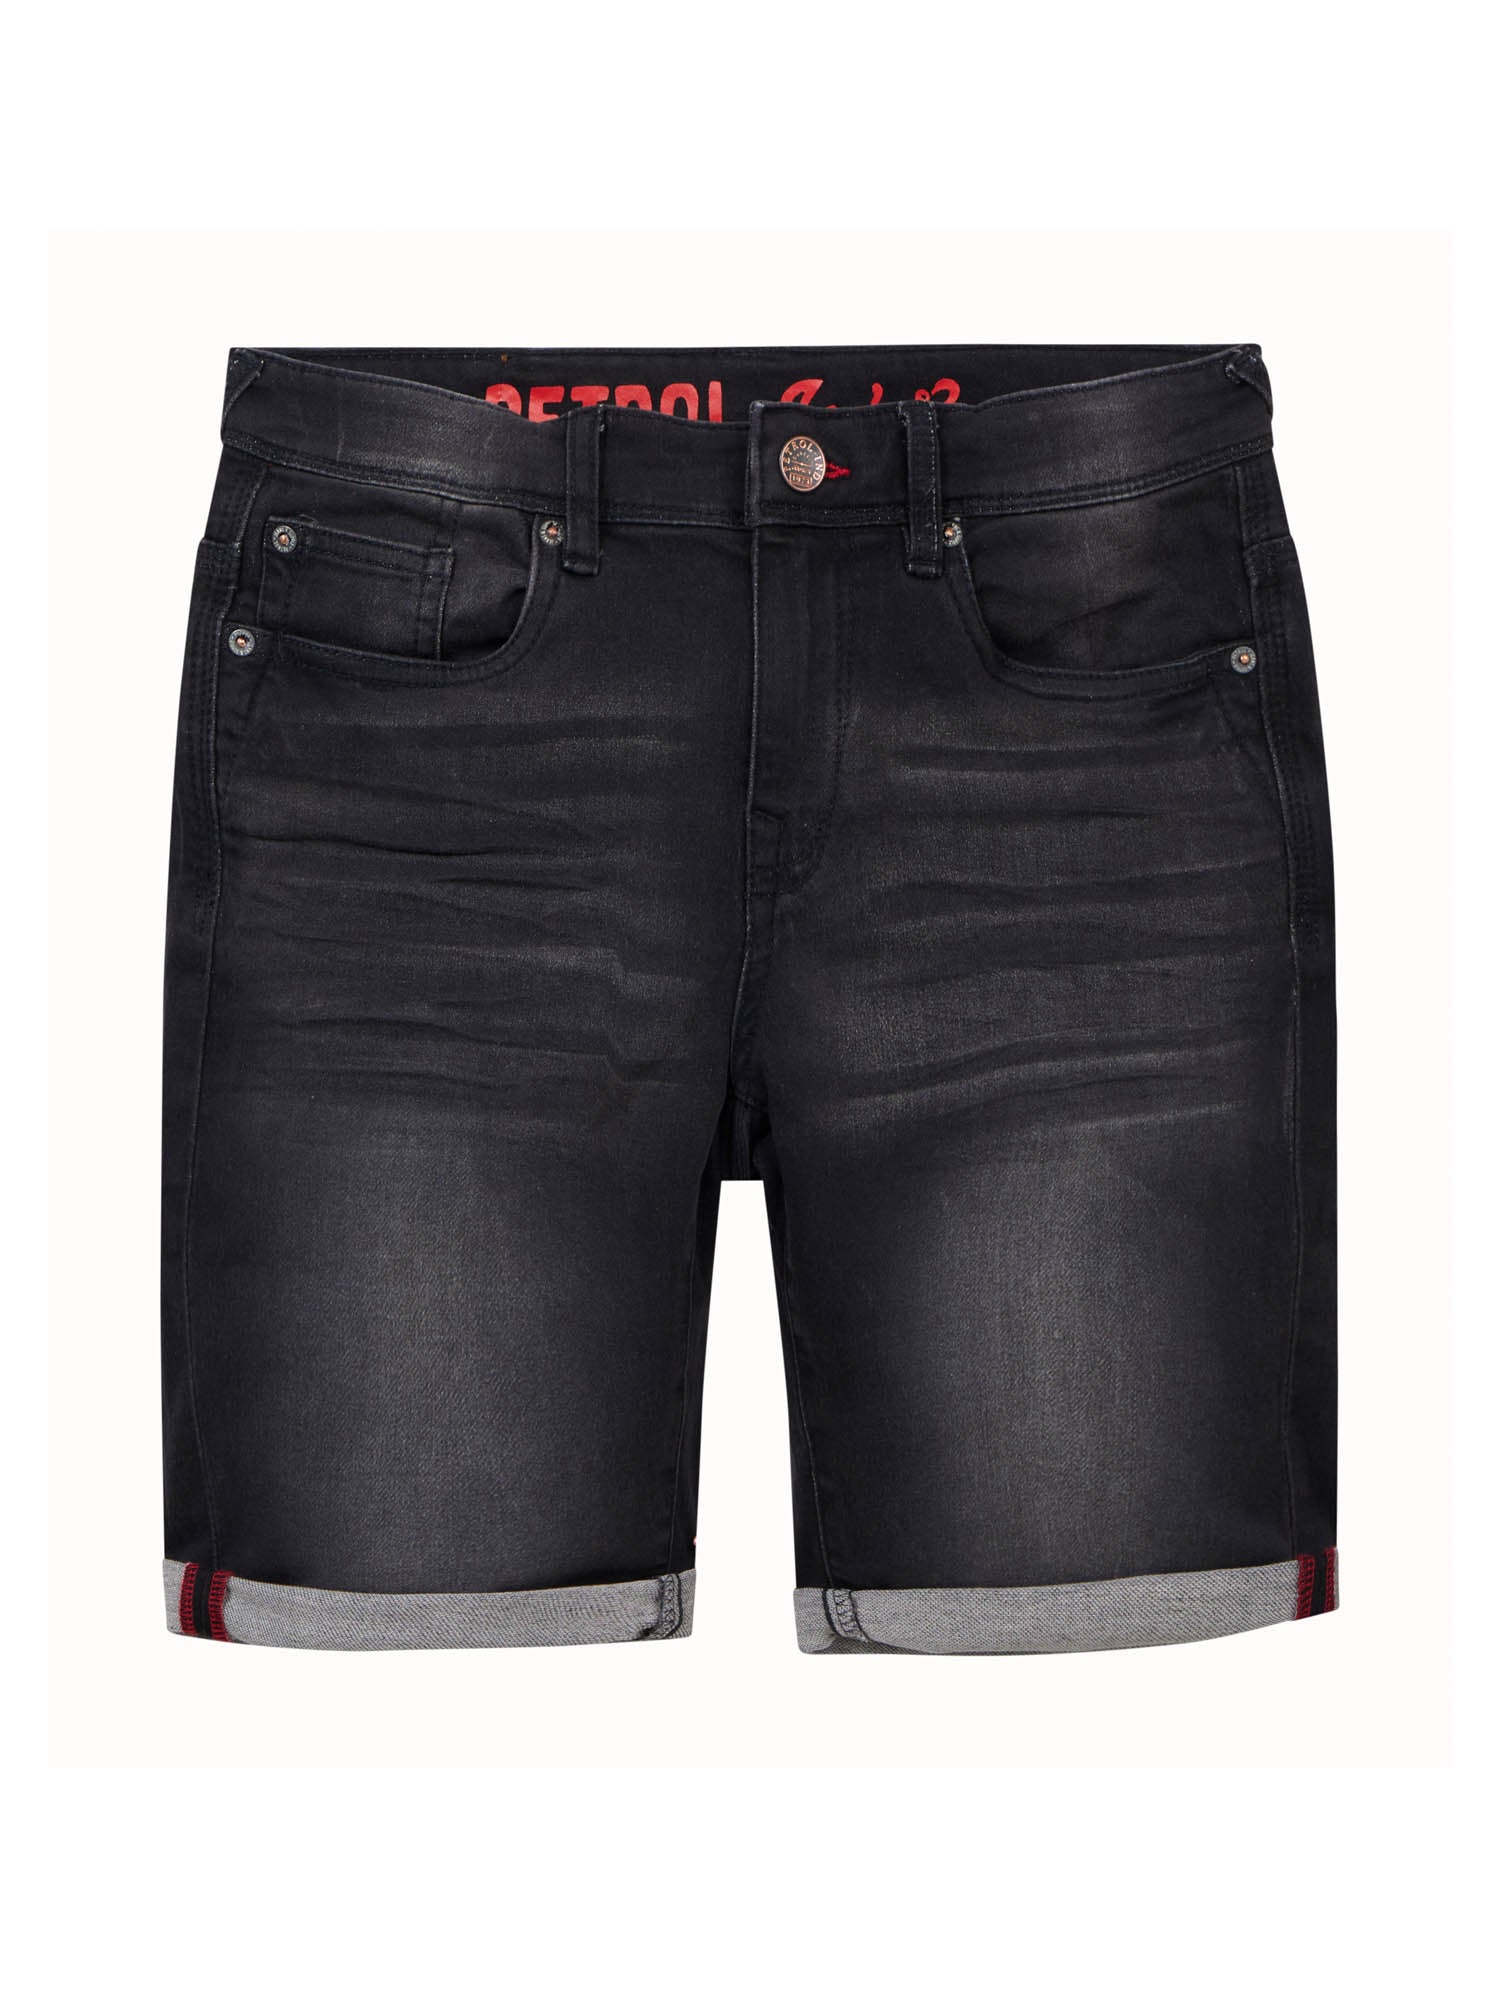 Jongens Jeans short five-pocket van Petrol in de kleur Black Stone in maat 176.